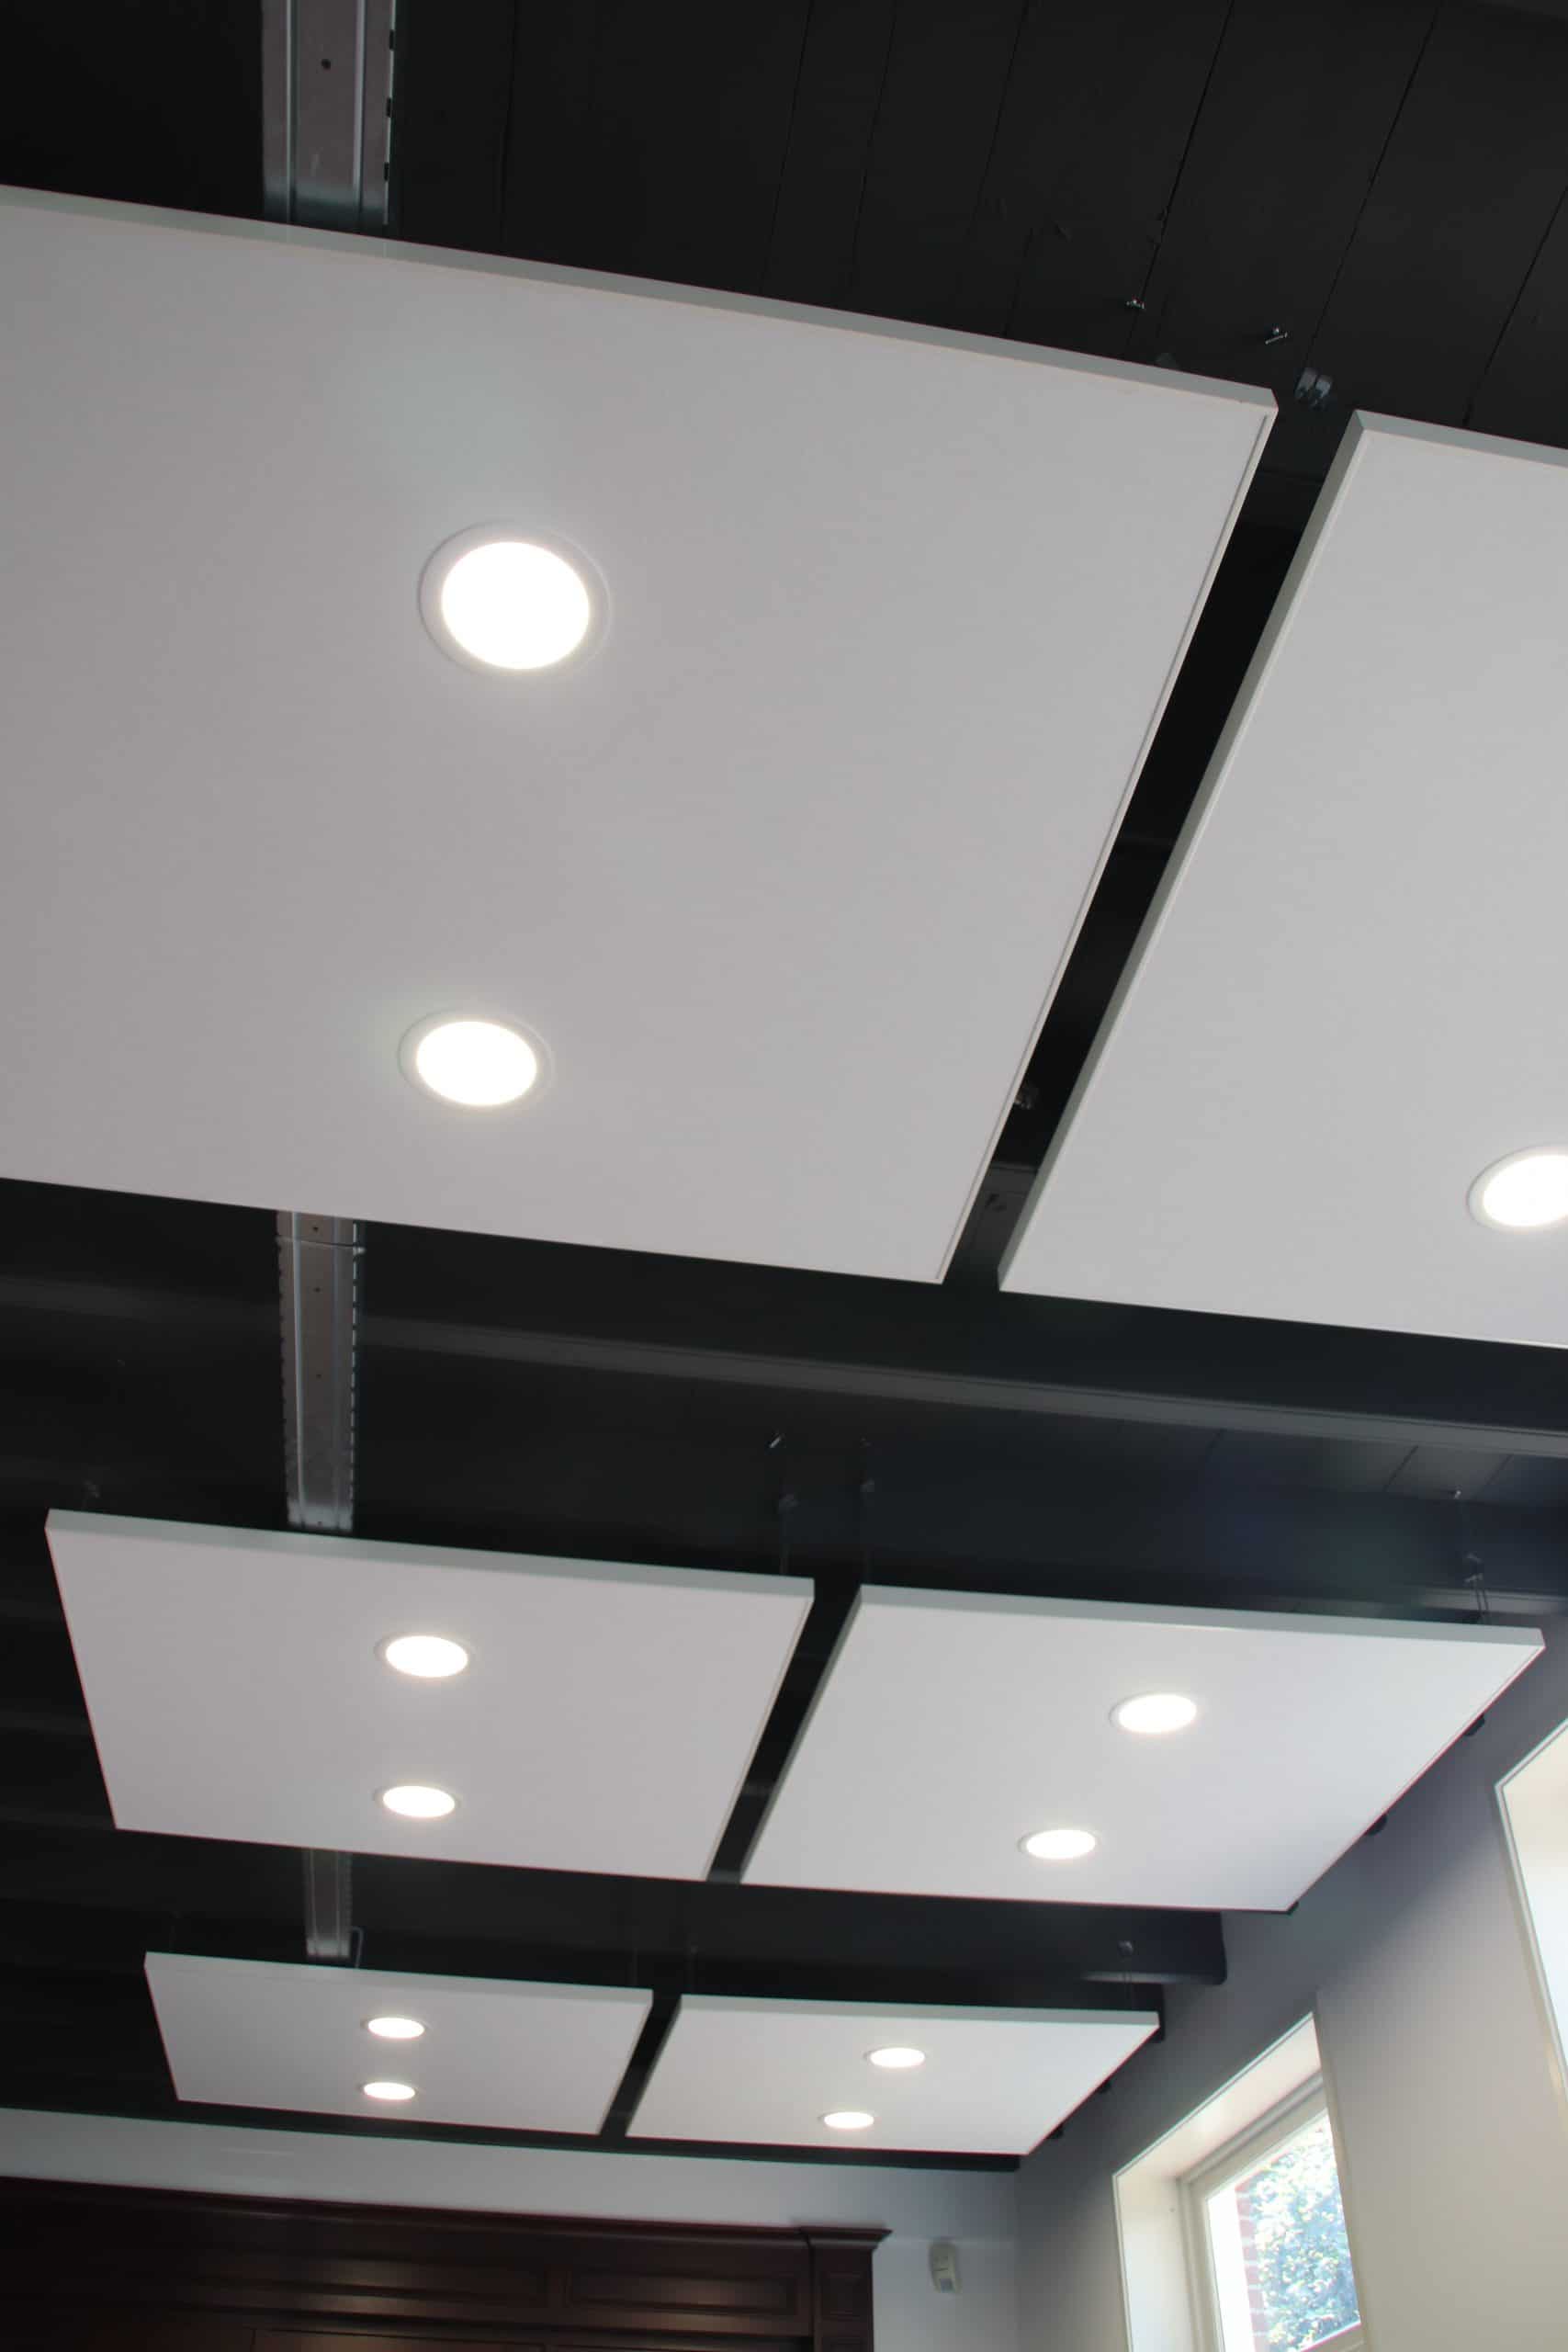 Om-de-akoestiek-te-verbeteren-zijn-er-overal-in-het-pand-akoestische-plafondpanelen-geplaatst-met-geintegreerde-led-verlichting